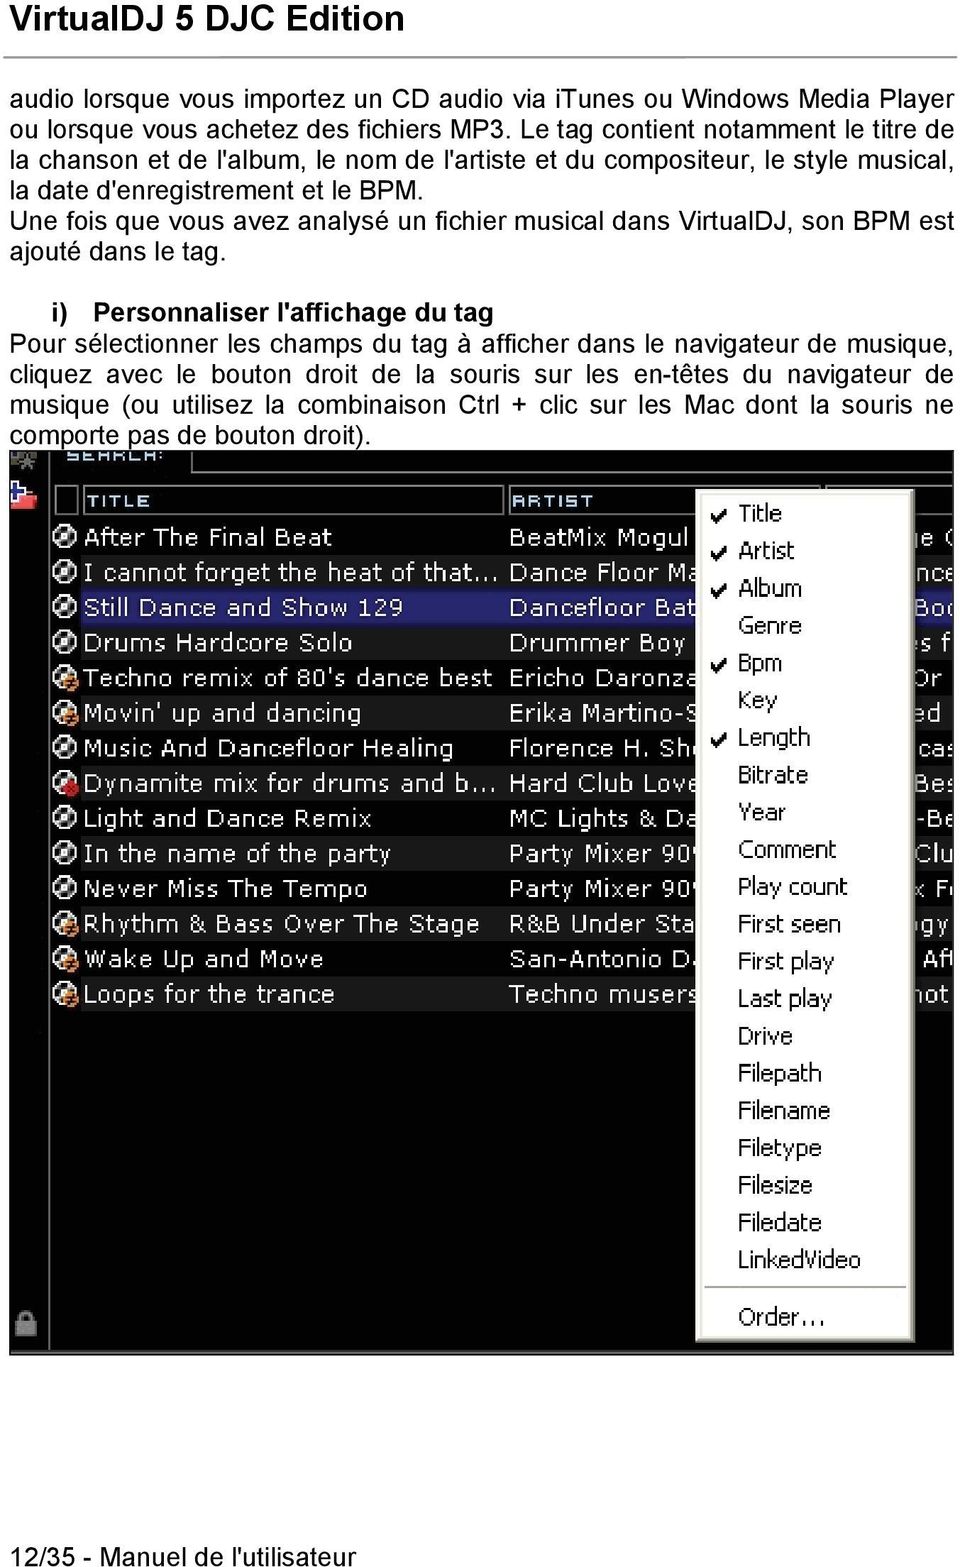 Une fois que vous avez analysé un fichier musical dans VirtualDJ, son BPM est ajouté dans le tag.